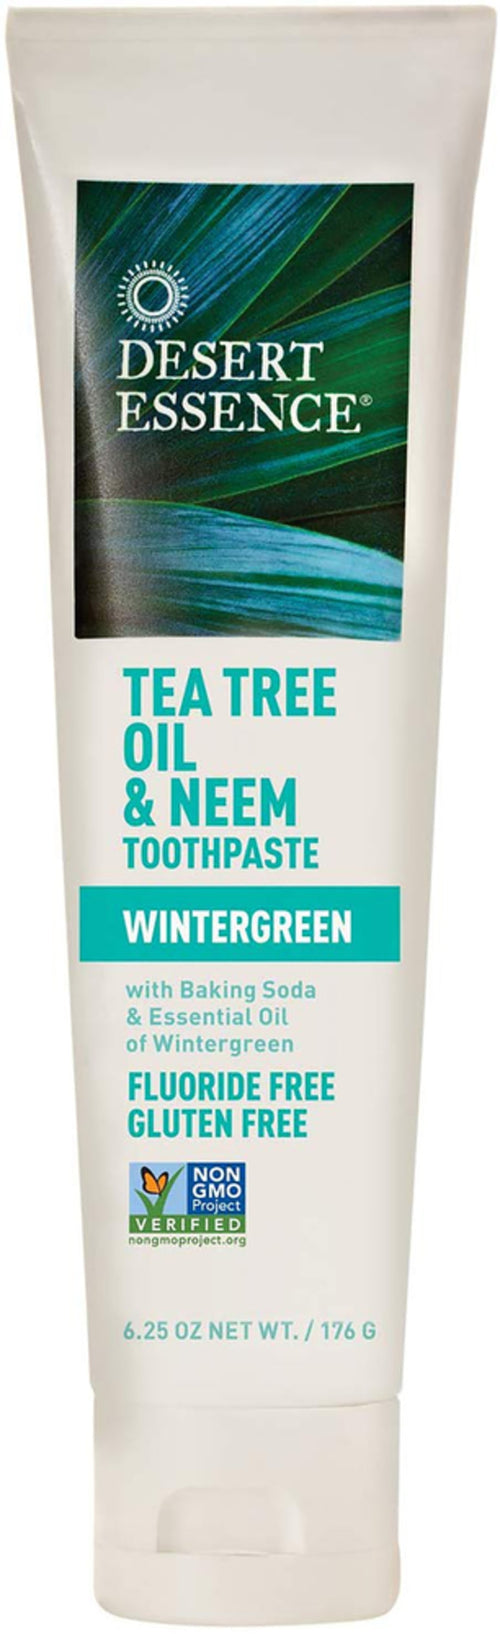 Pastă de dinţi cu ulei de arbore de ceai şi neem (Qışarmudu) 6.25 oz 177 g Tub    